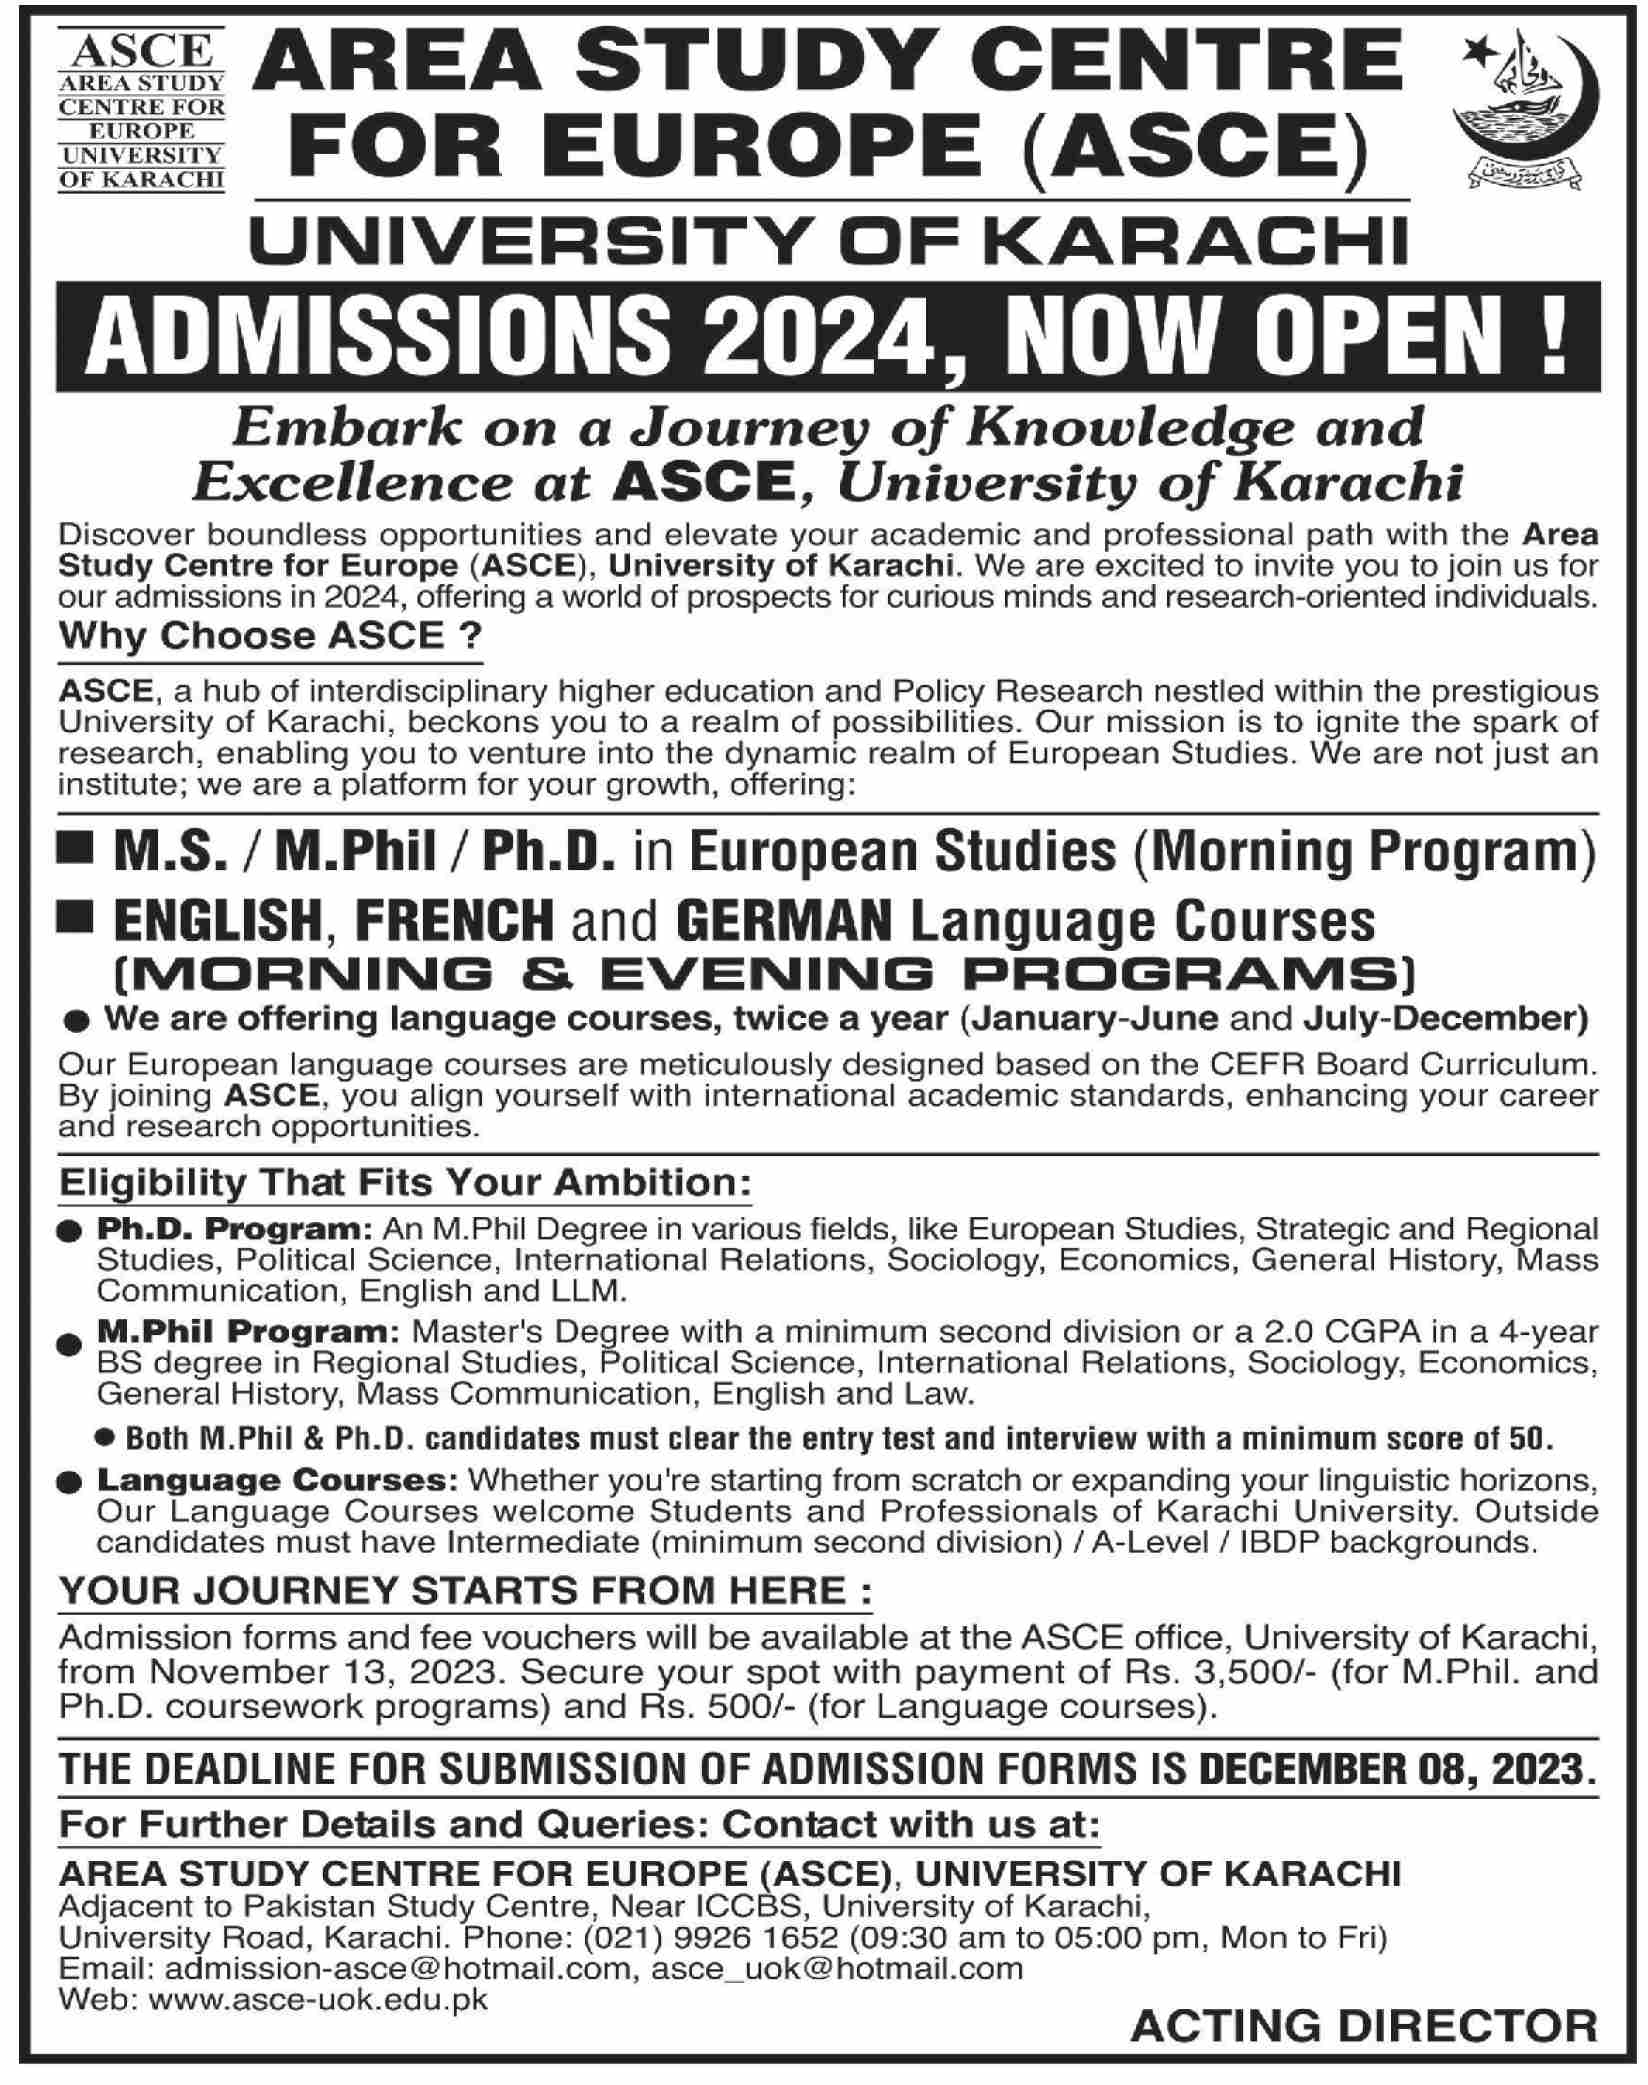 University of Karachi Admissions Open 2024 MS Ph.D M.Phil Program Language Courses